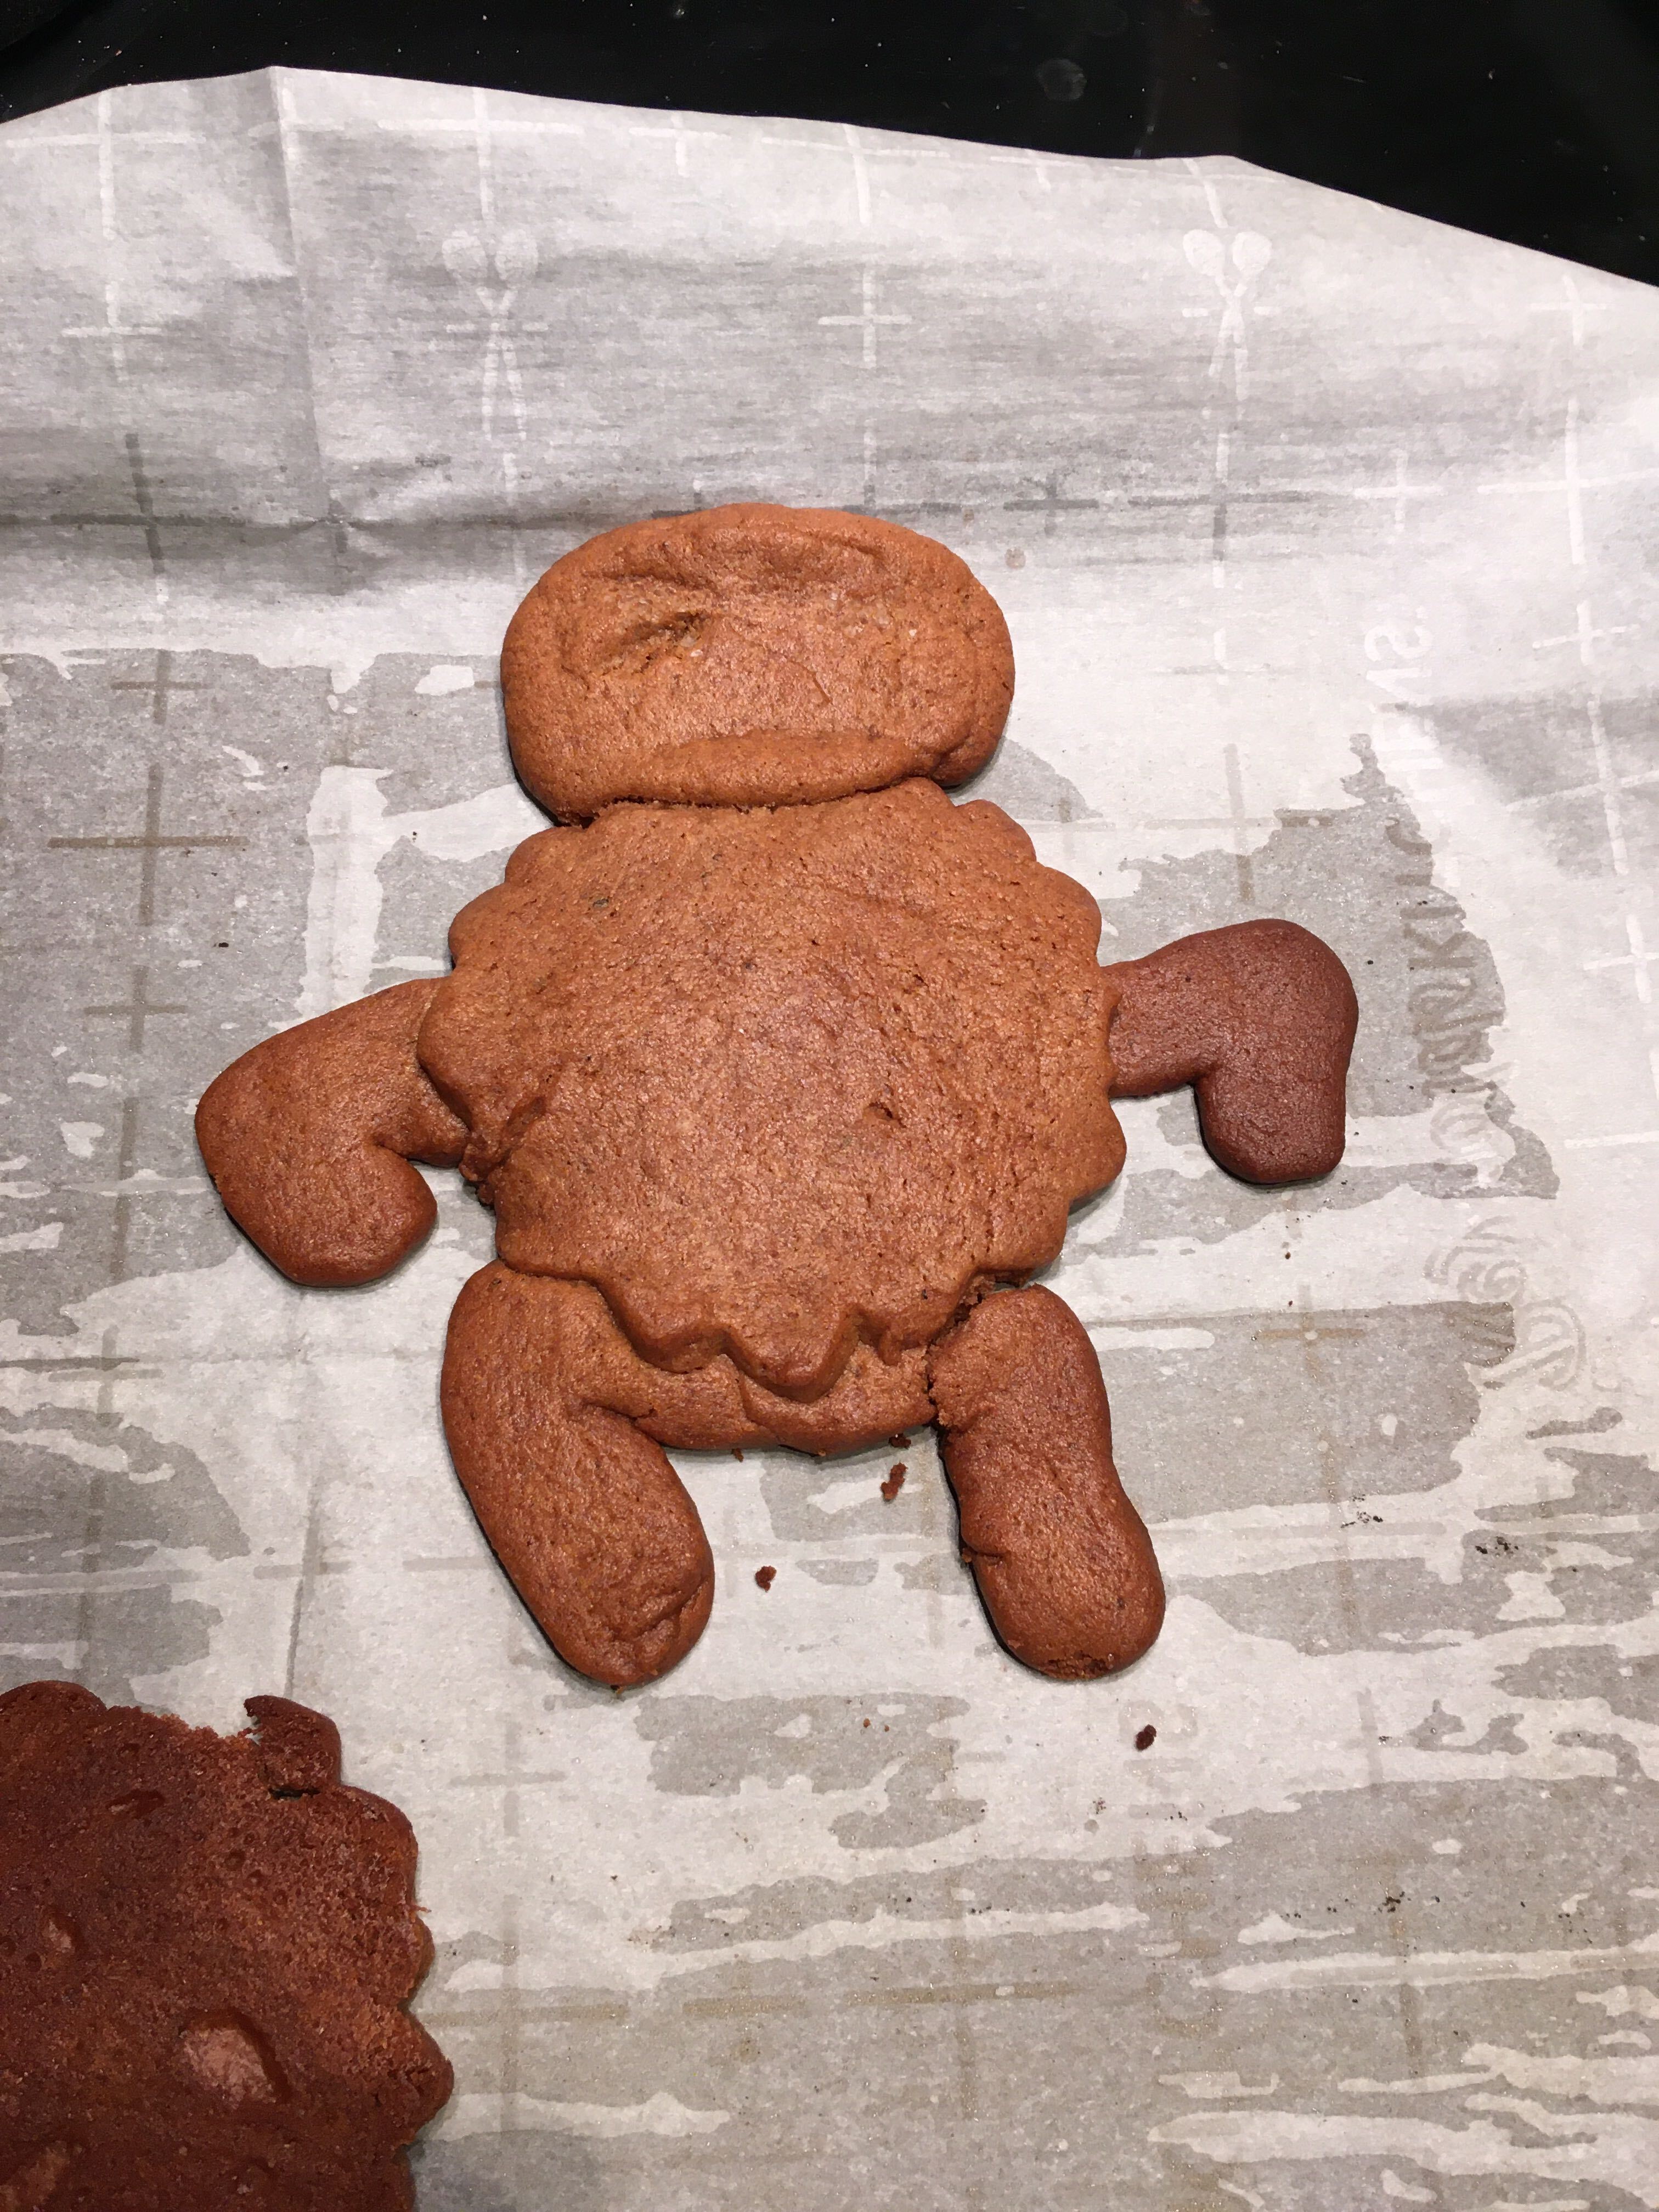 Eugene's gingerbread